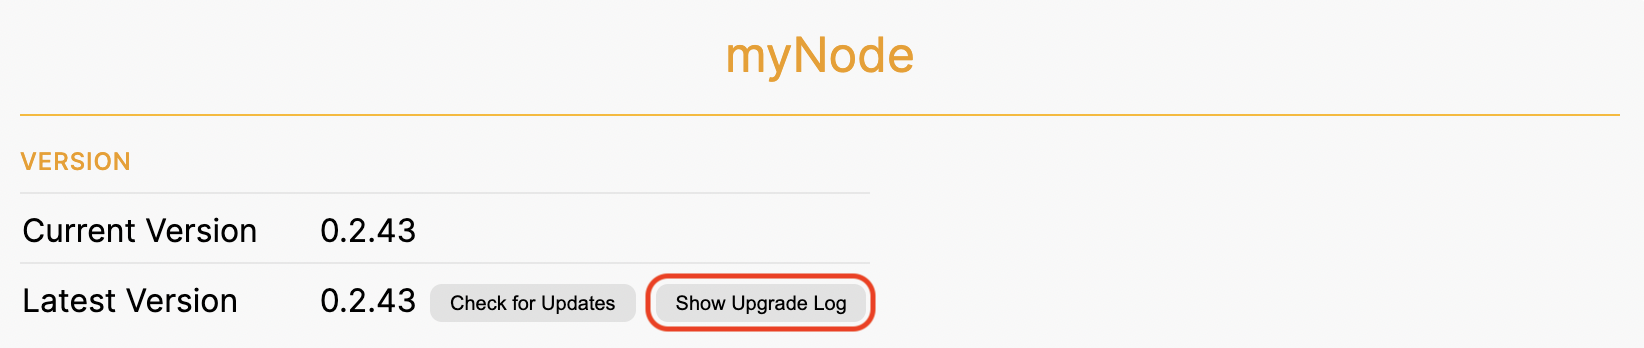 Show Upgrade Log Button